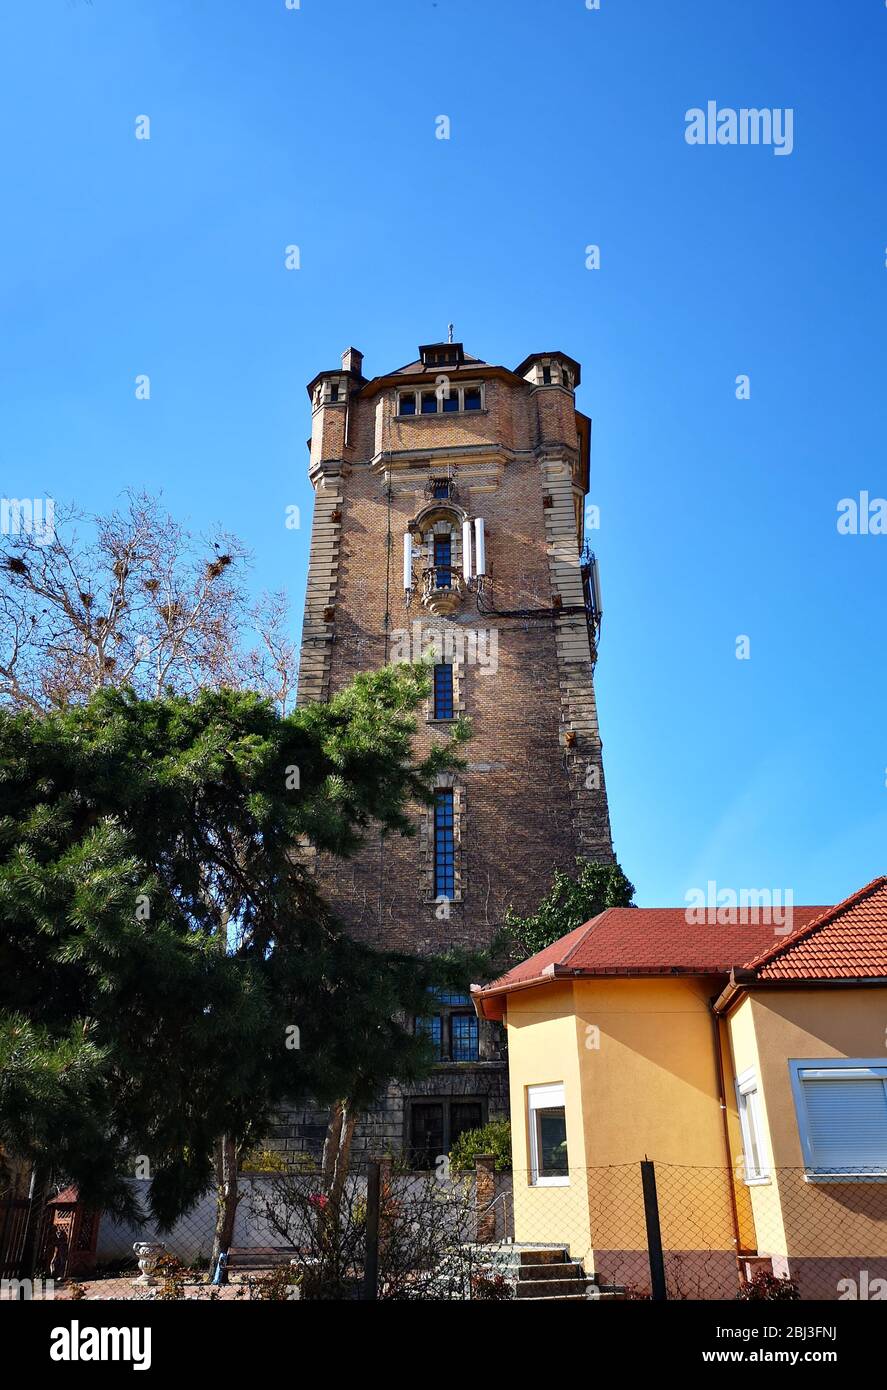 Edificio histórico antiguo, estructura de torre de agua, monumento de arquitectura medieval conocido como "Turnul de apa" en Arad, Rumania, 03/31/2019 Foto de stock